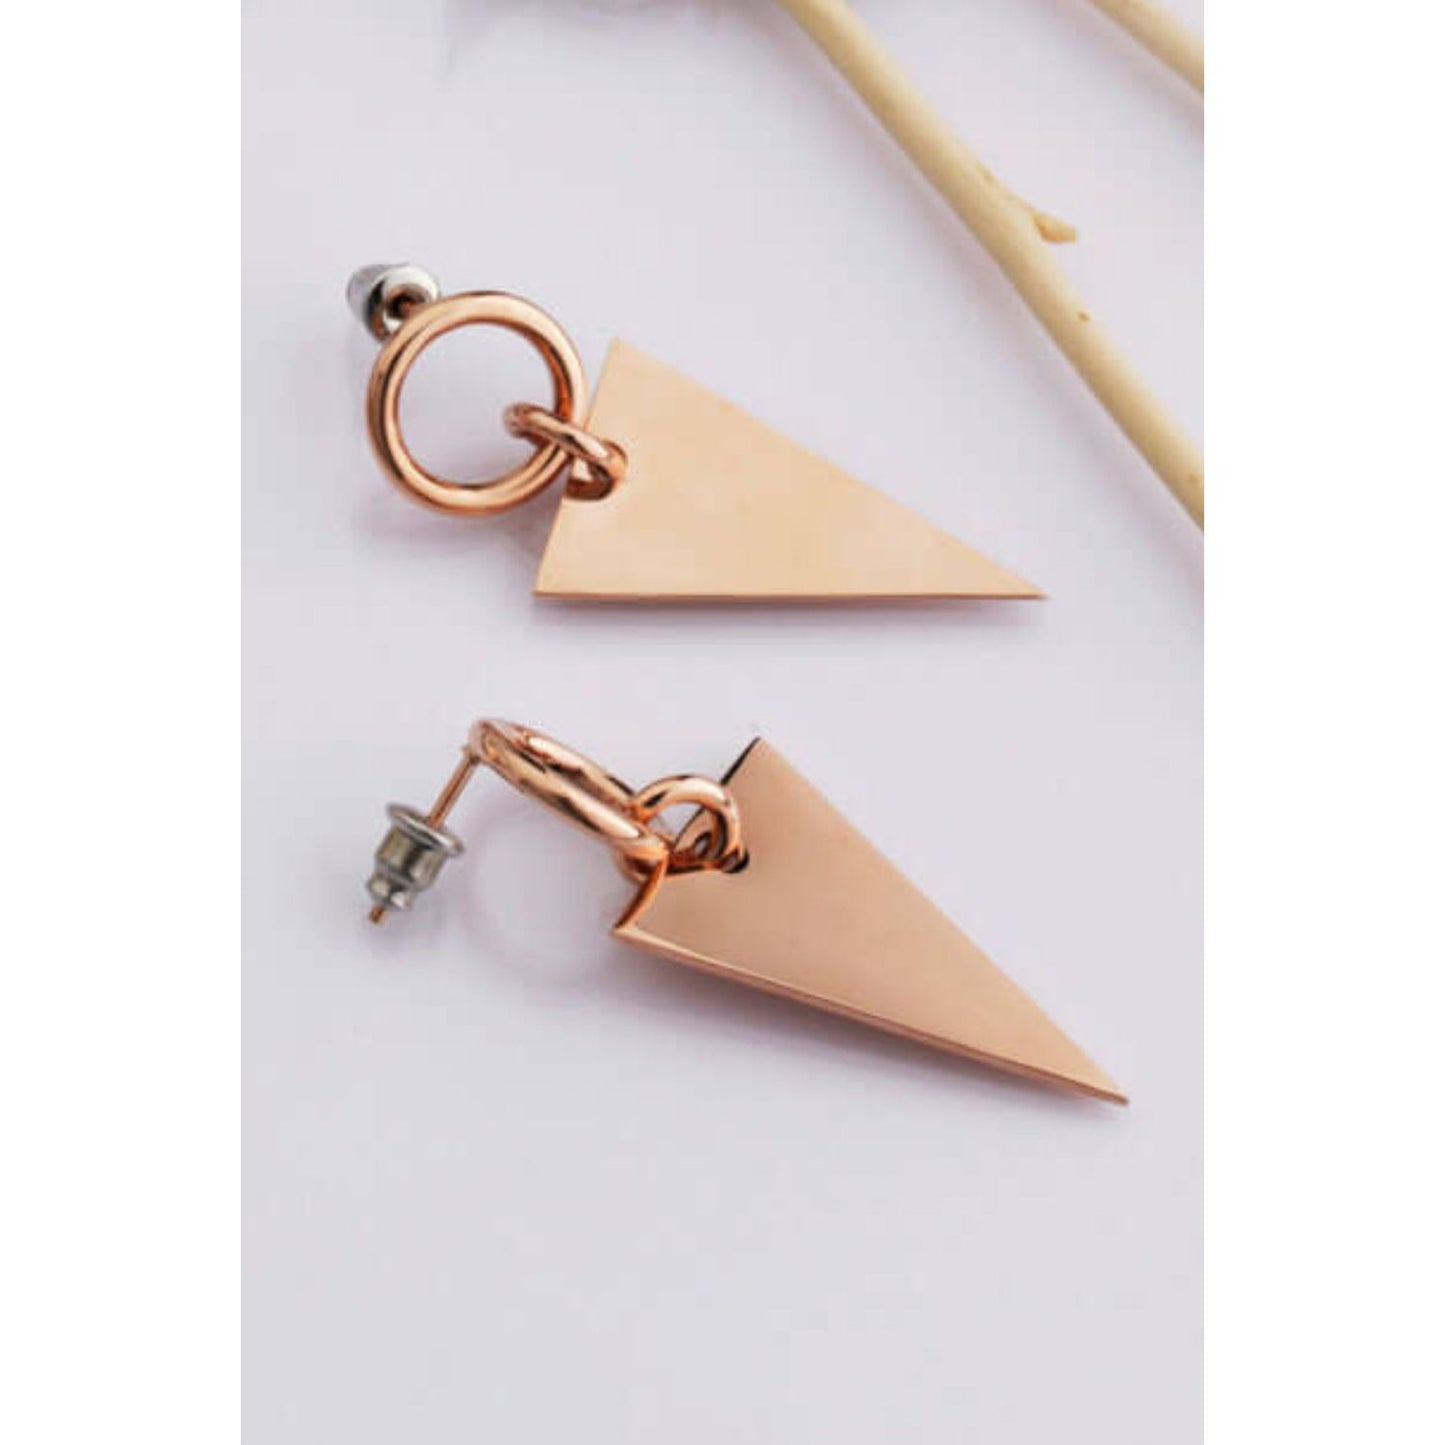 Stainless Steel Triangle Dangle Earrings - TiffanyzKlozet